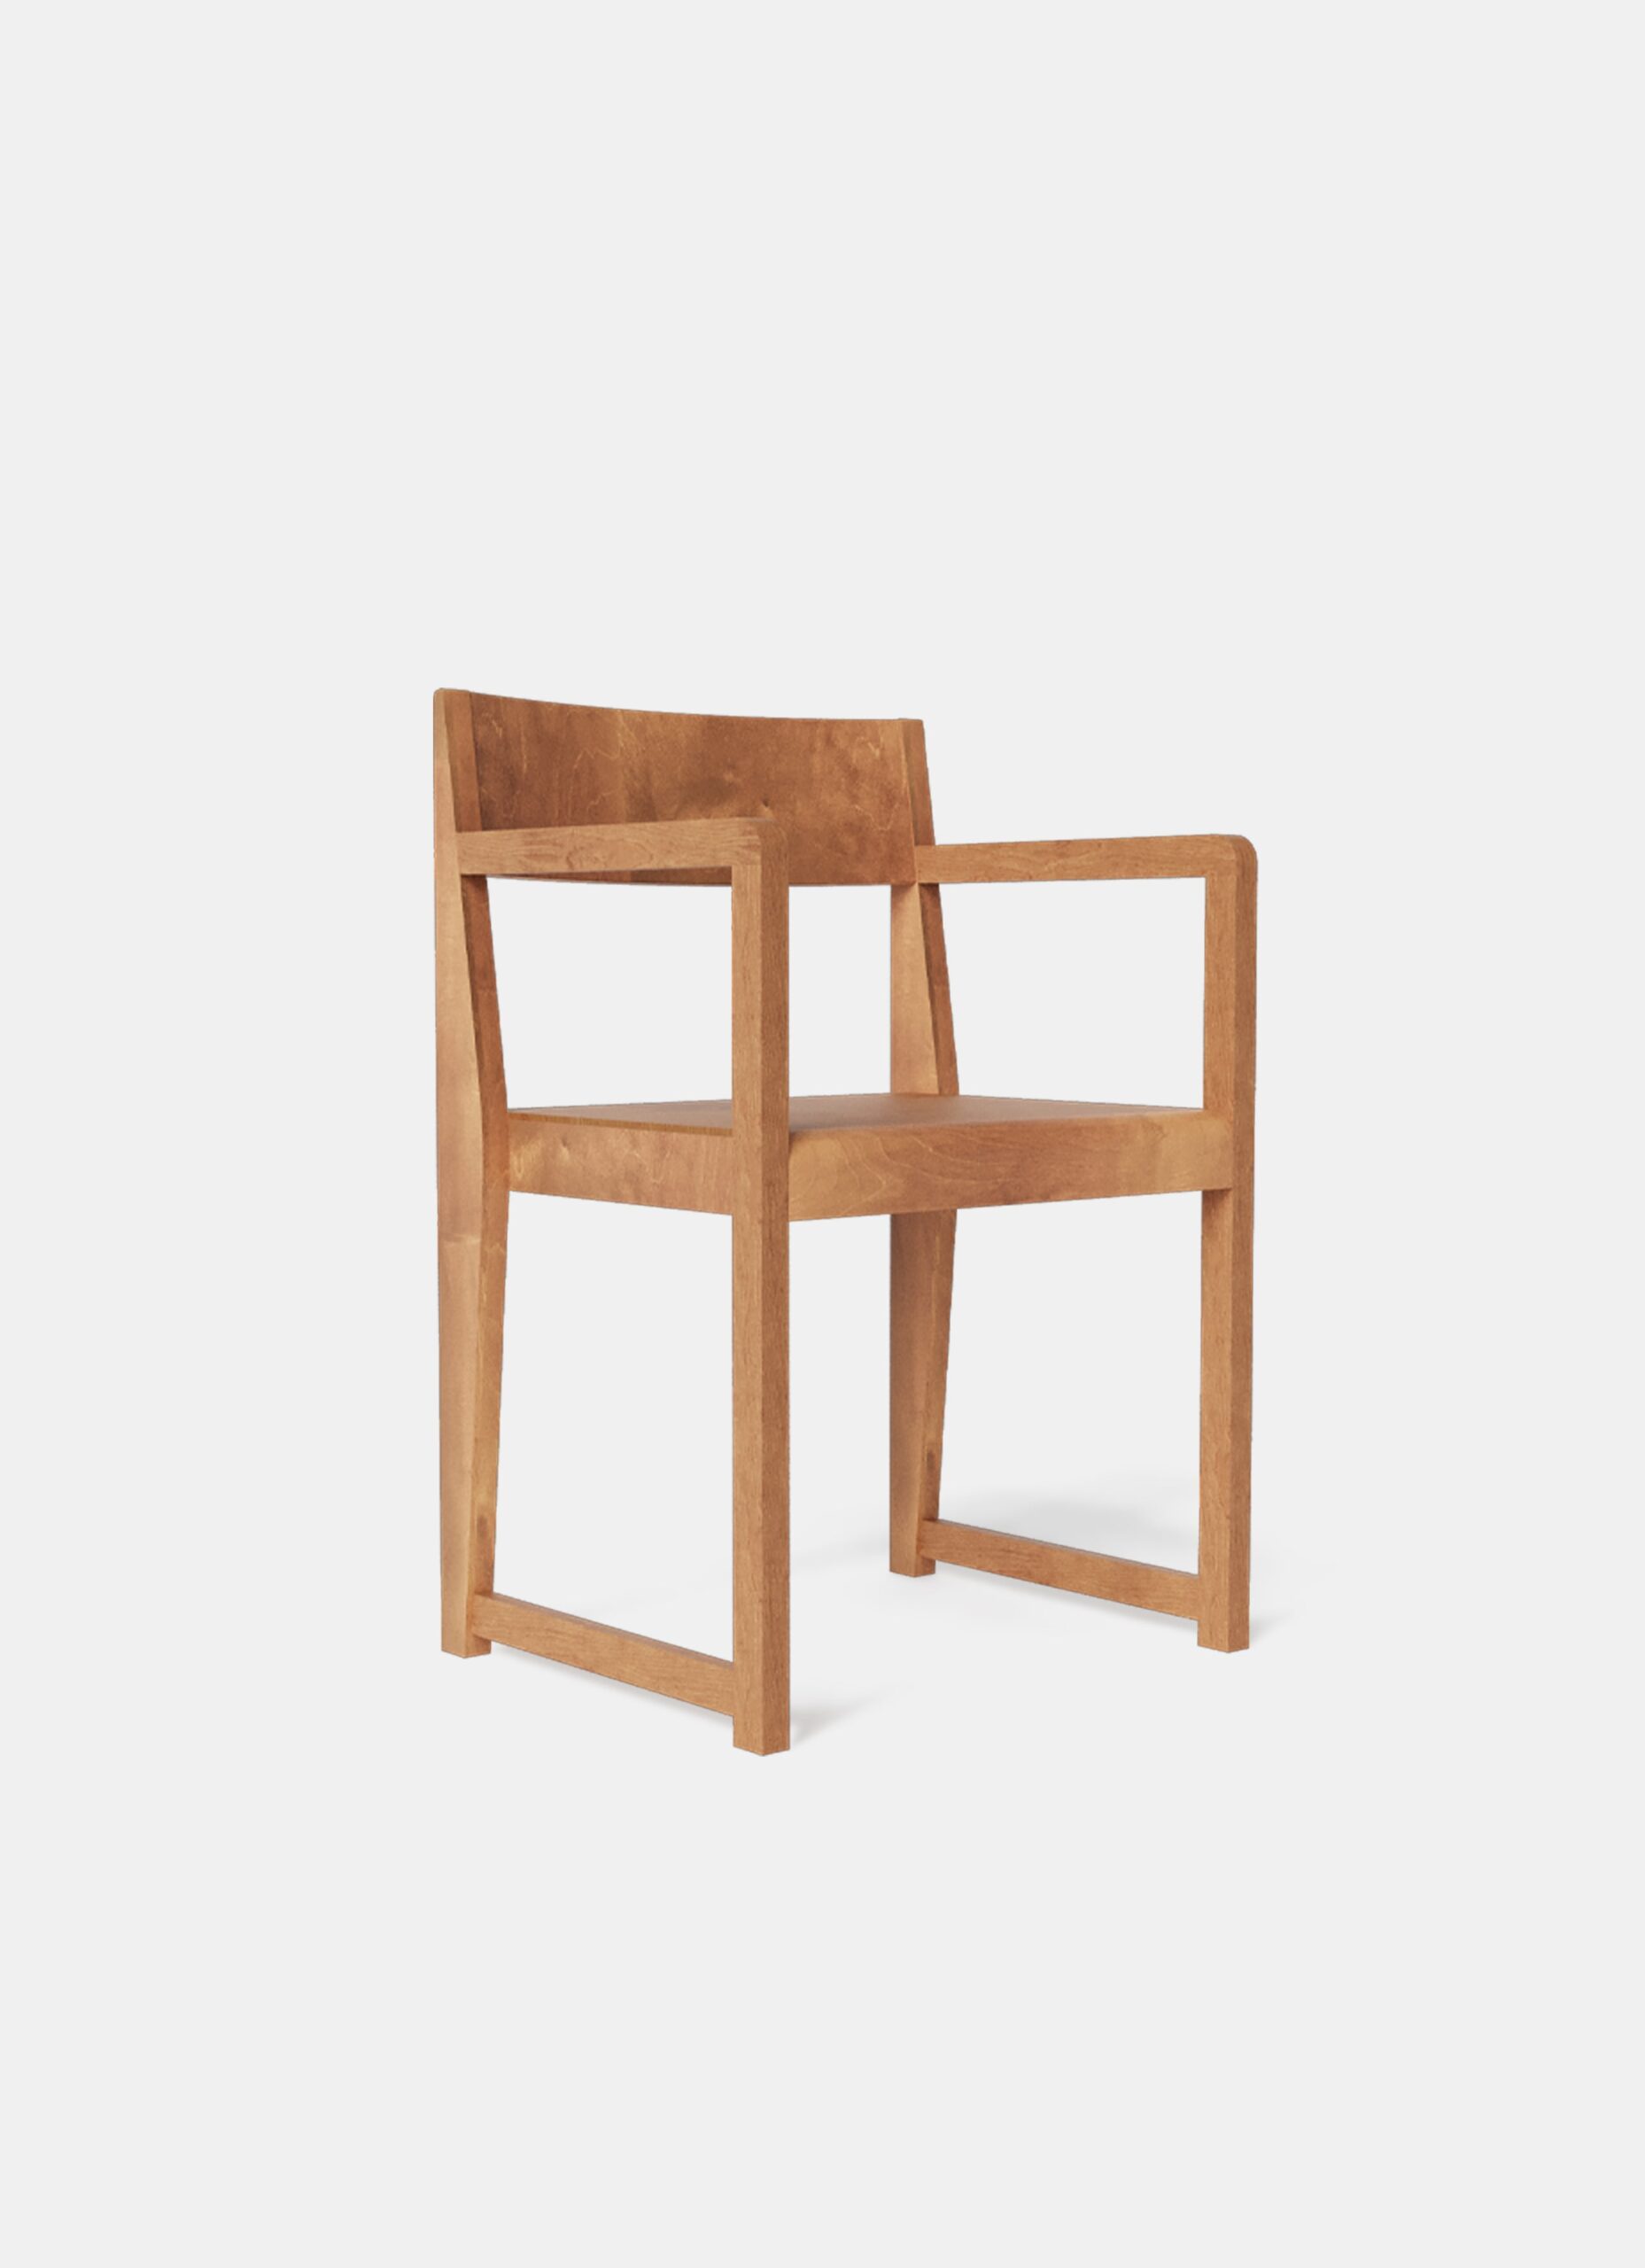 Frama - Armrest Chair 01 - Warm Brown Birch